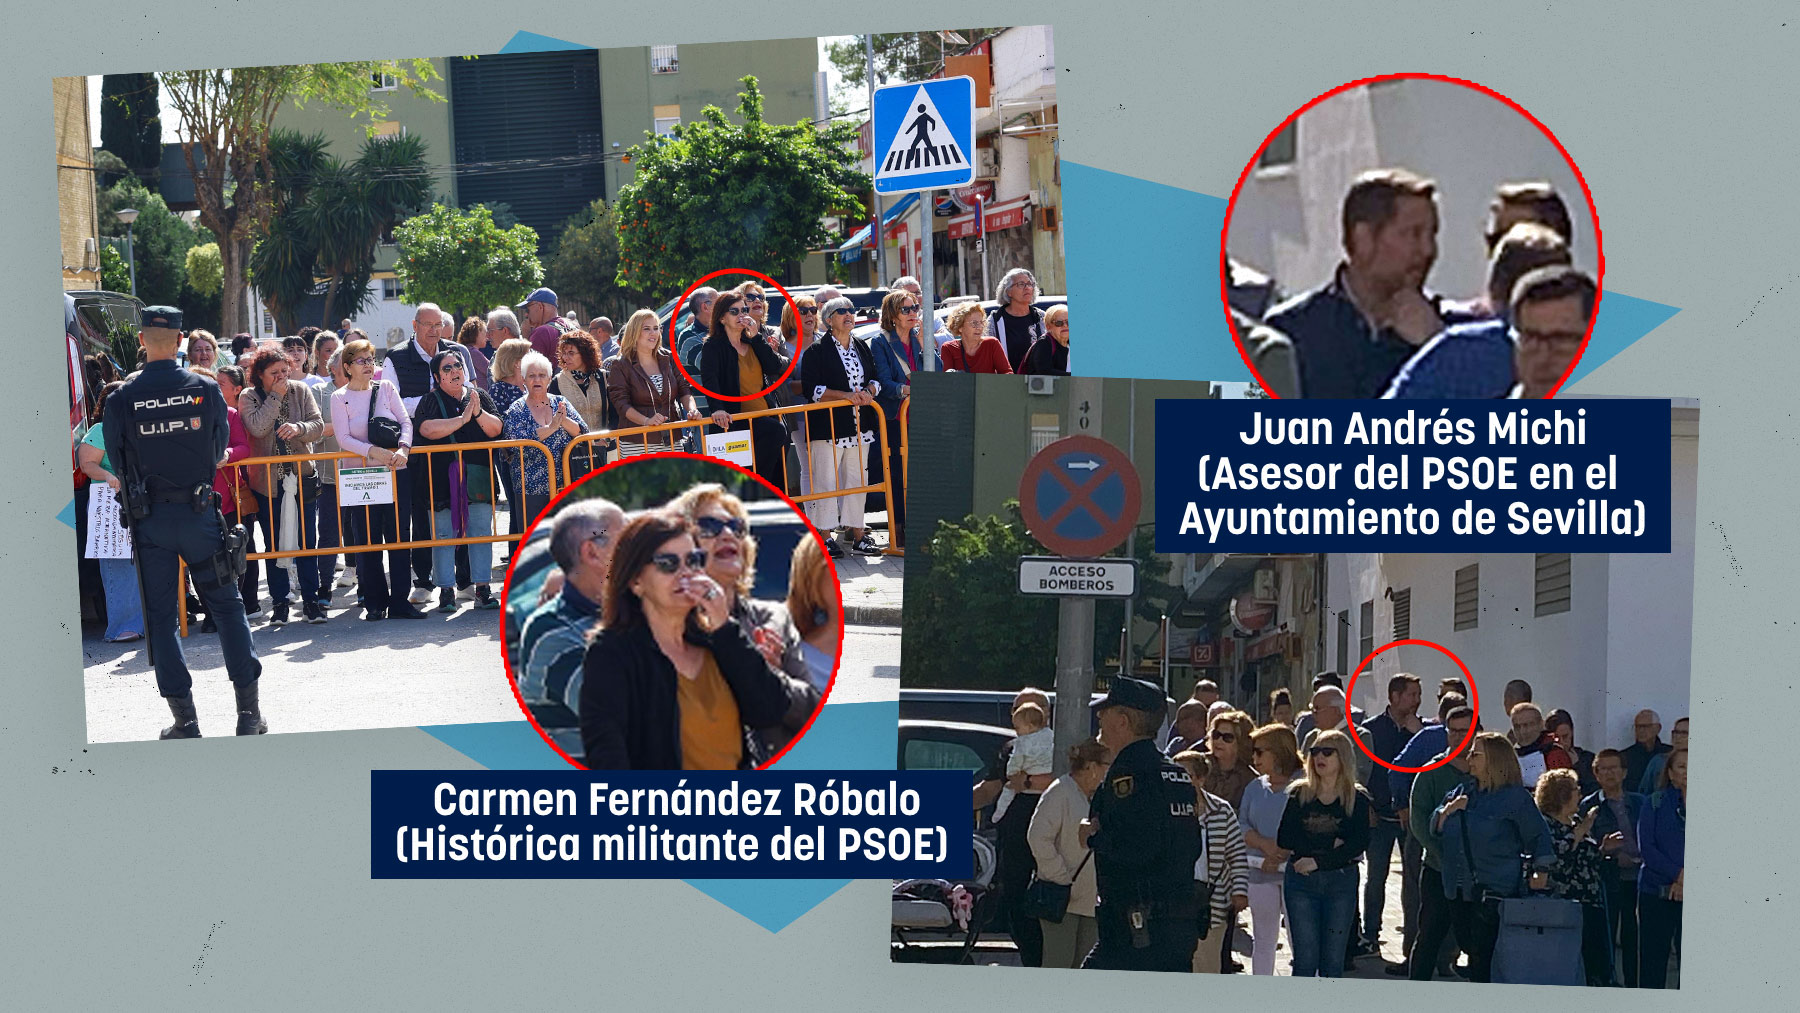 Dos históricos socialistas andaluces hacen un escrache contra Juanma Moreno en Sevilla.